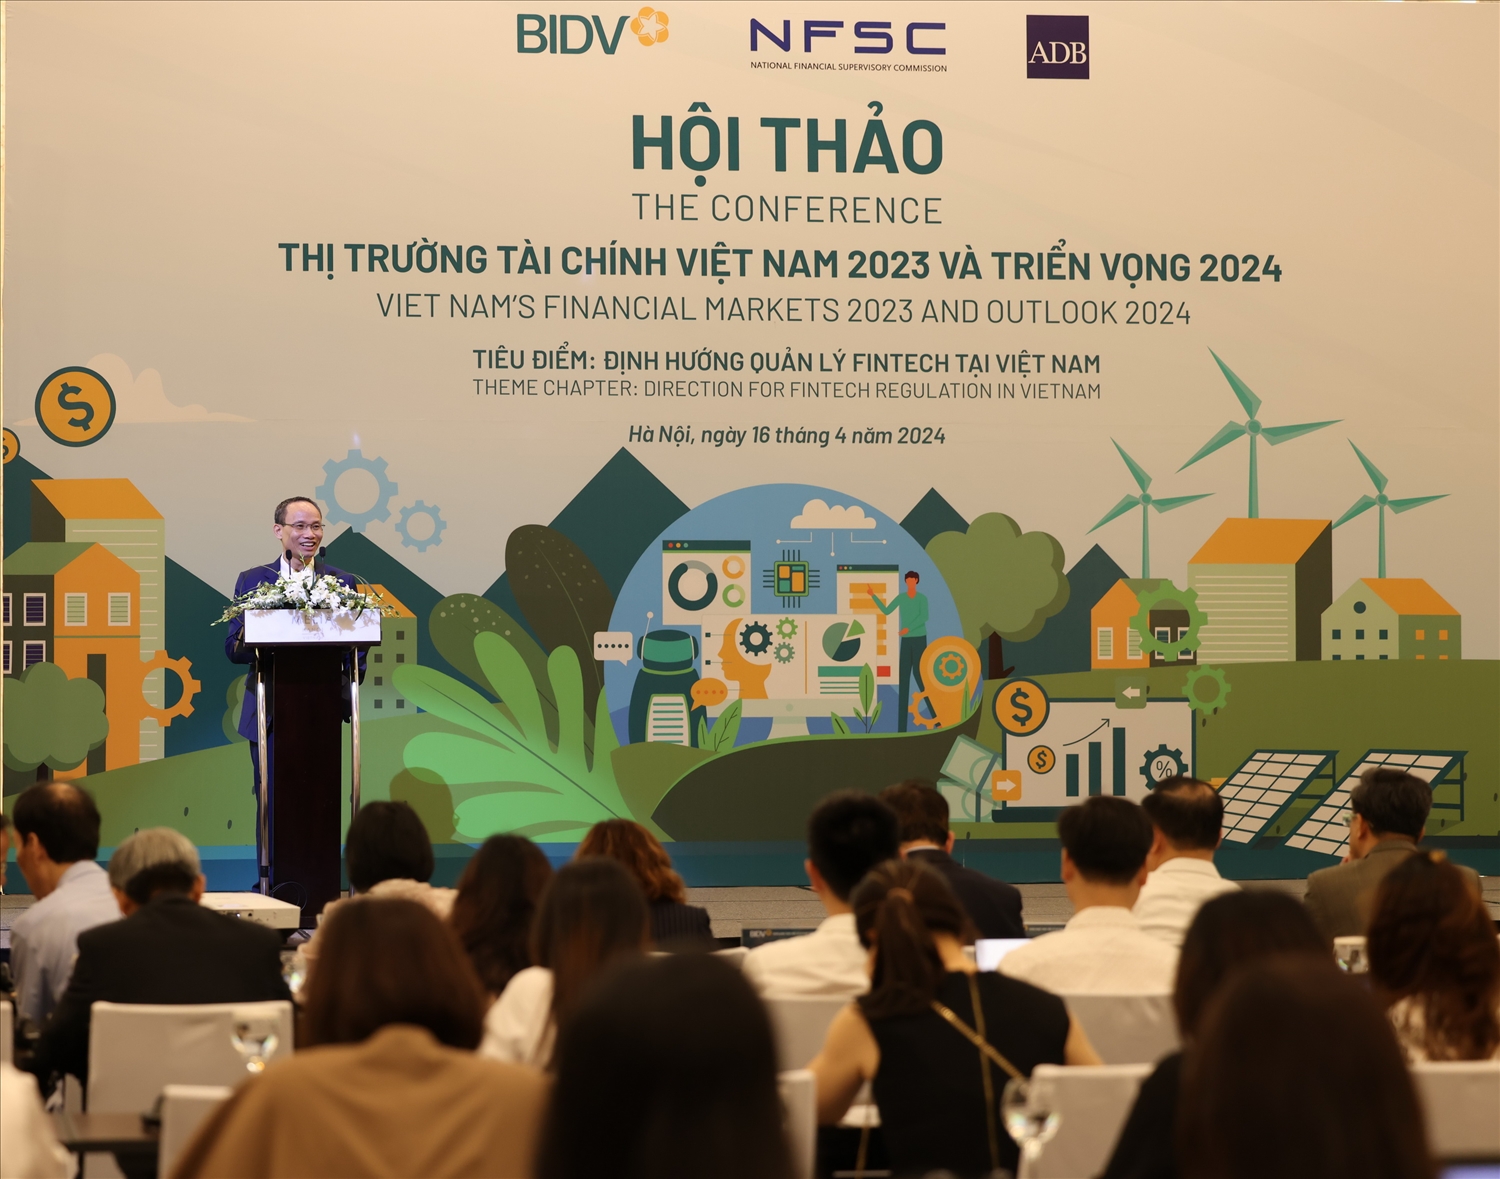 TS. Cấn Văn Lực - Chuyên gia Kinh tế trưởng BIDV, Giám đốc Viện Đào tạo và Nghiên cứu BIDV – trình bày tóm tắt báo cáo “Thị trường tài chính Việt Nam năm 2023 và triển vọng năm 2024”